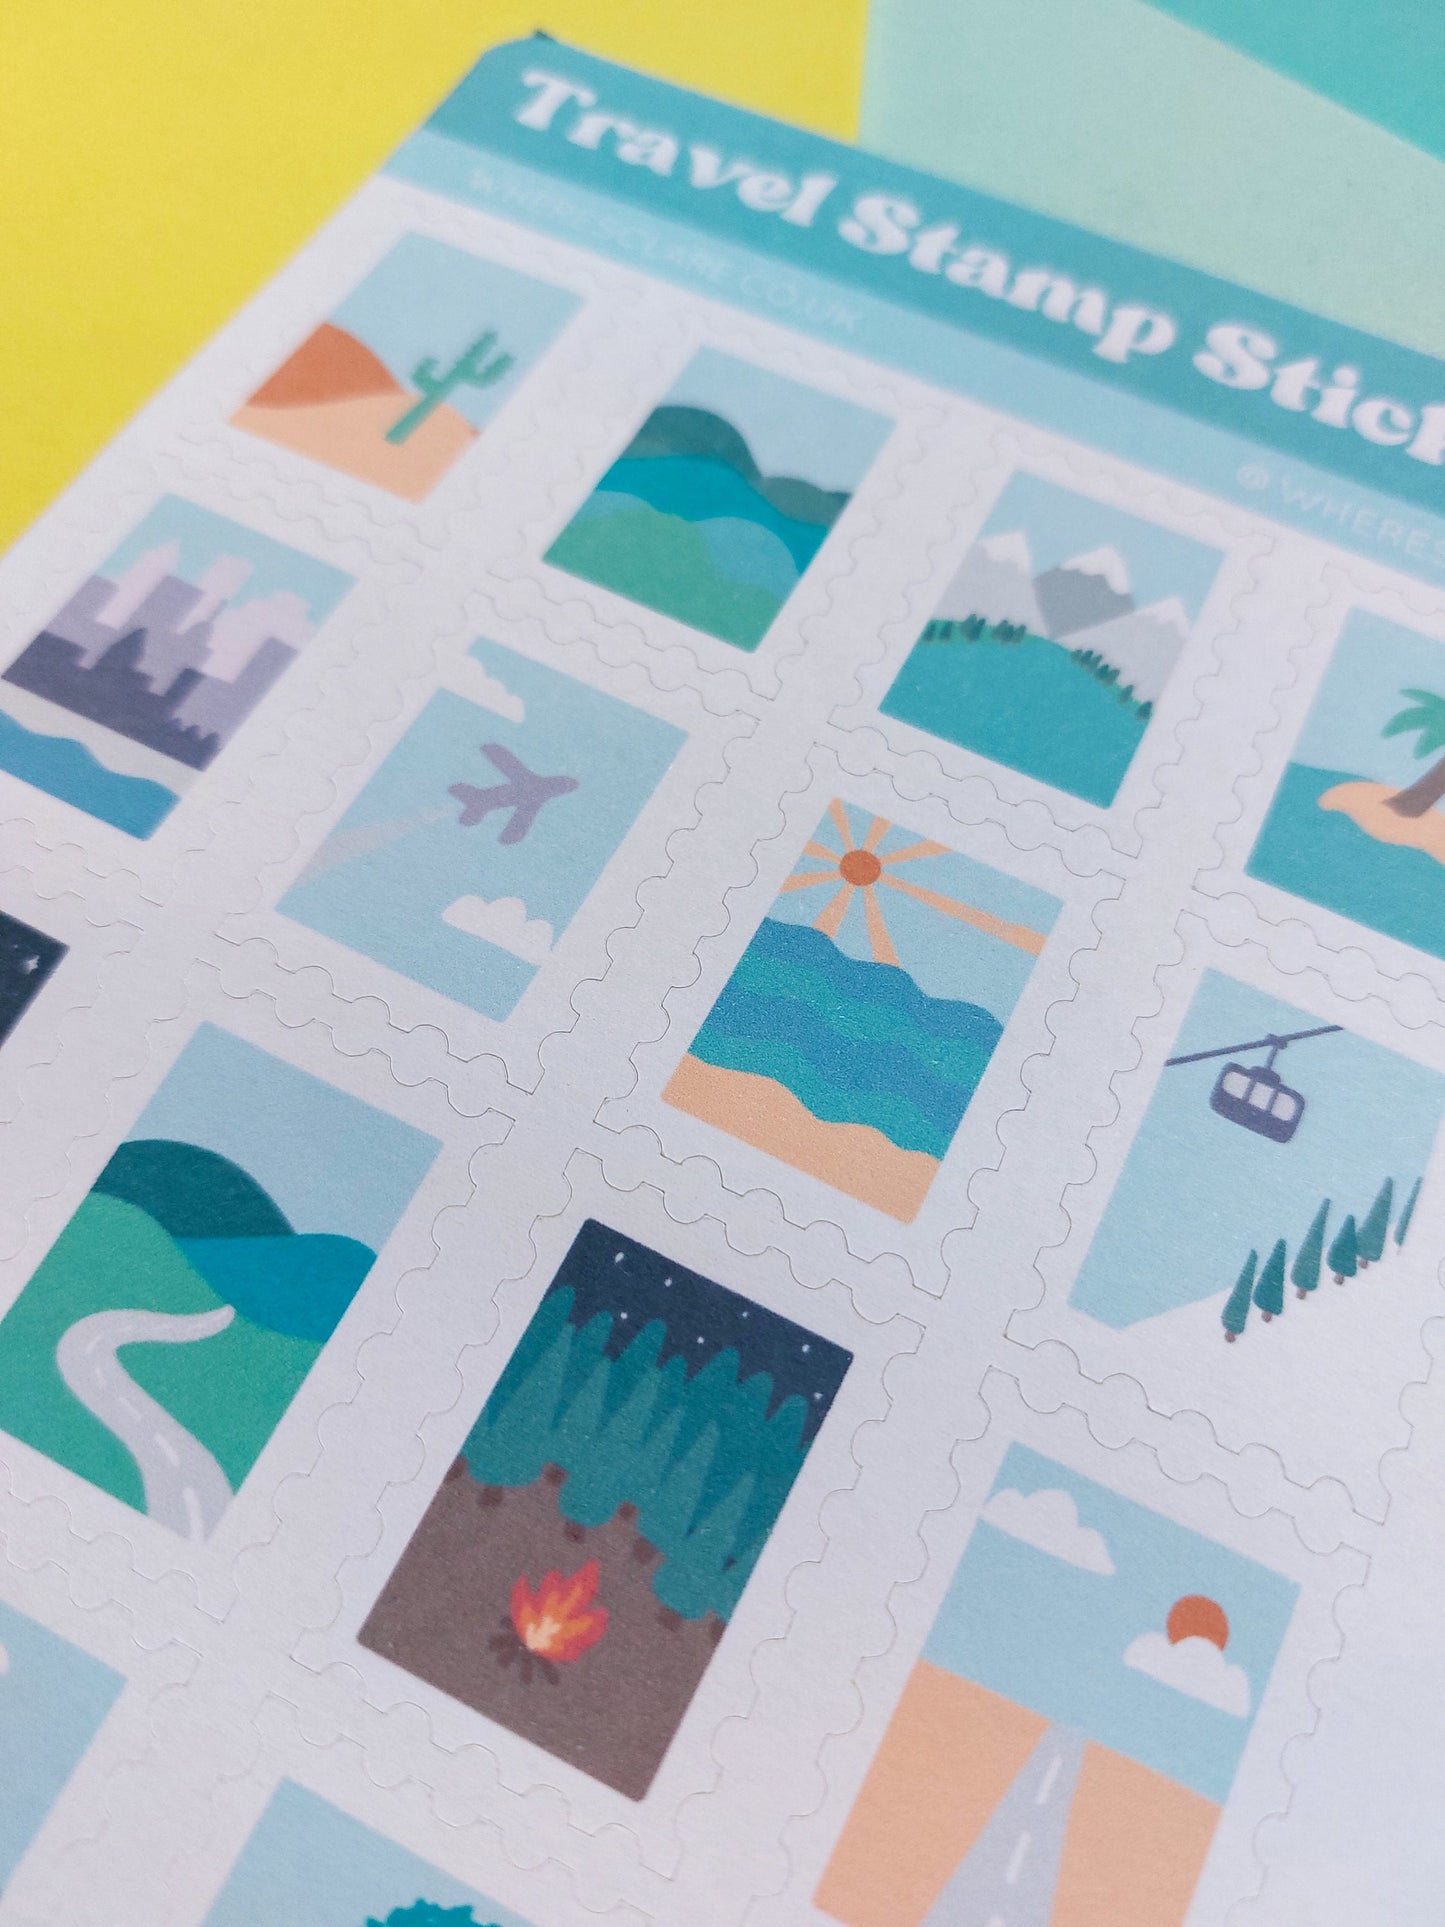 Travel Stamp Sticker Sheet